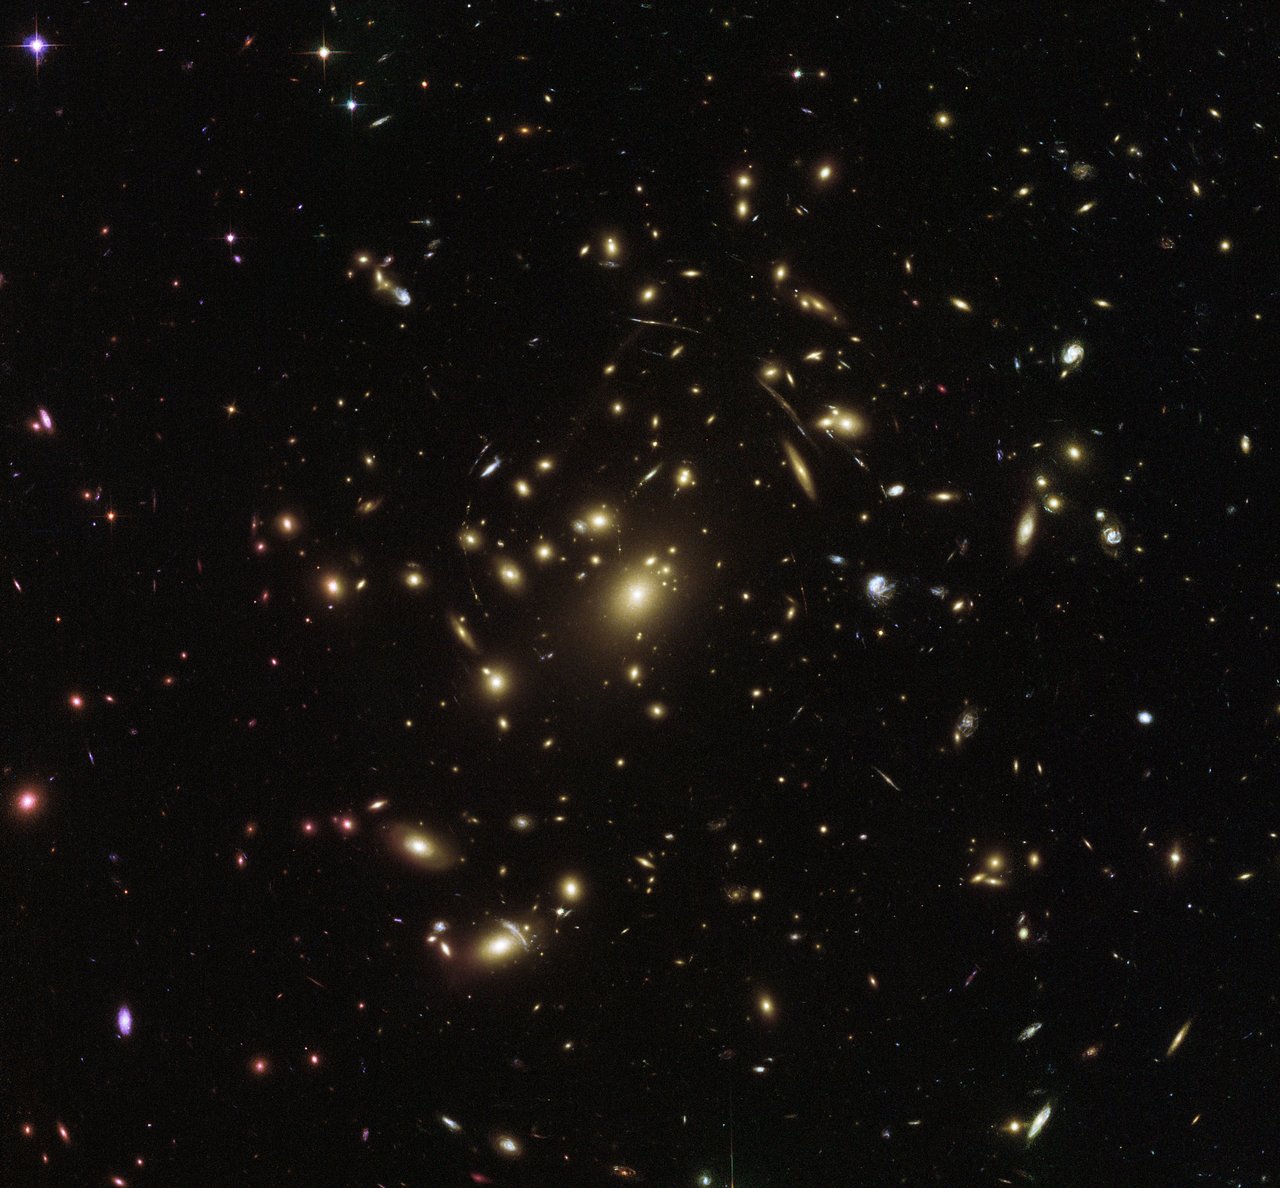 ერთ კადრში ჩატეული ათასობით გალაქტიკა - ჰაბლის მიერ დაჭერილი გიგანტური გალაქტიკათგროვა